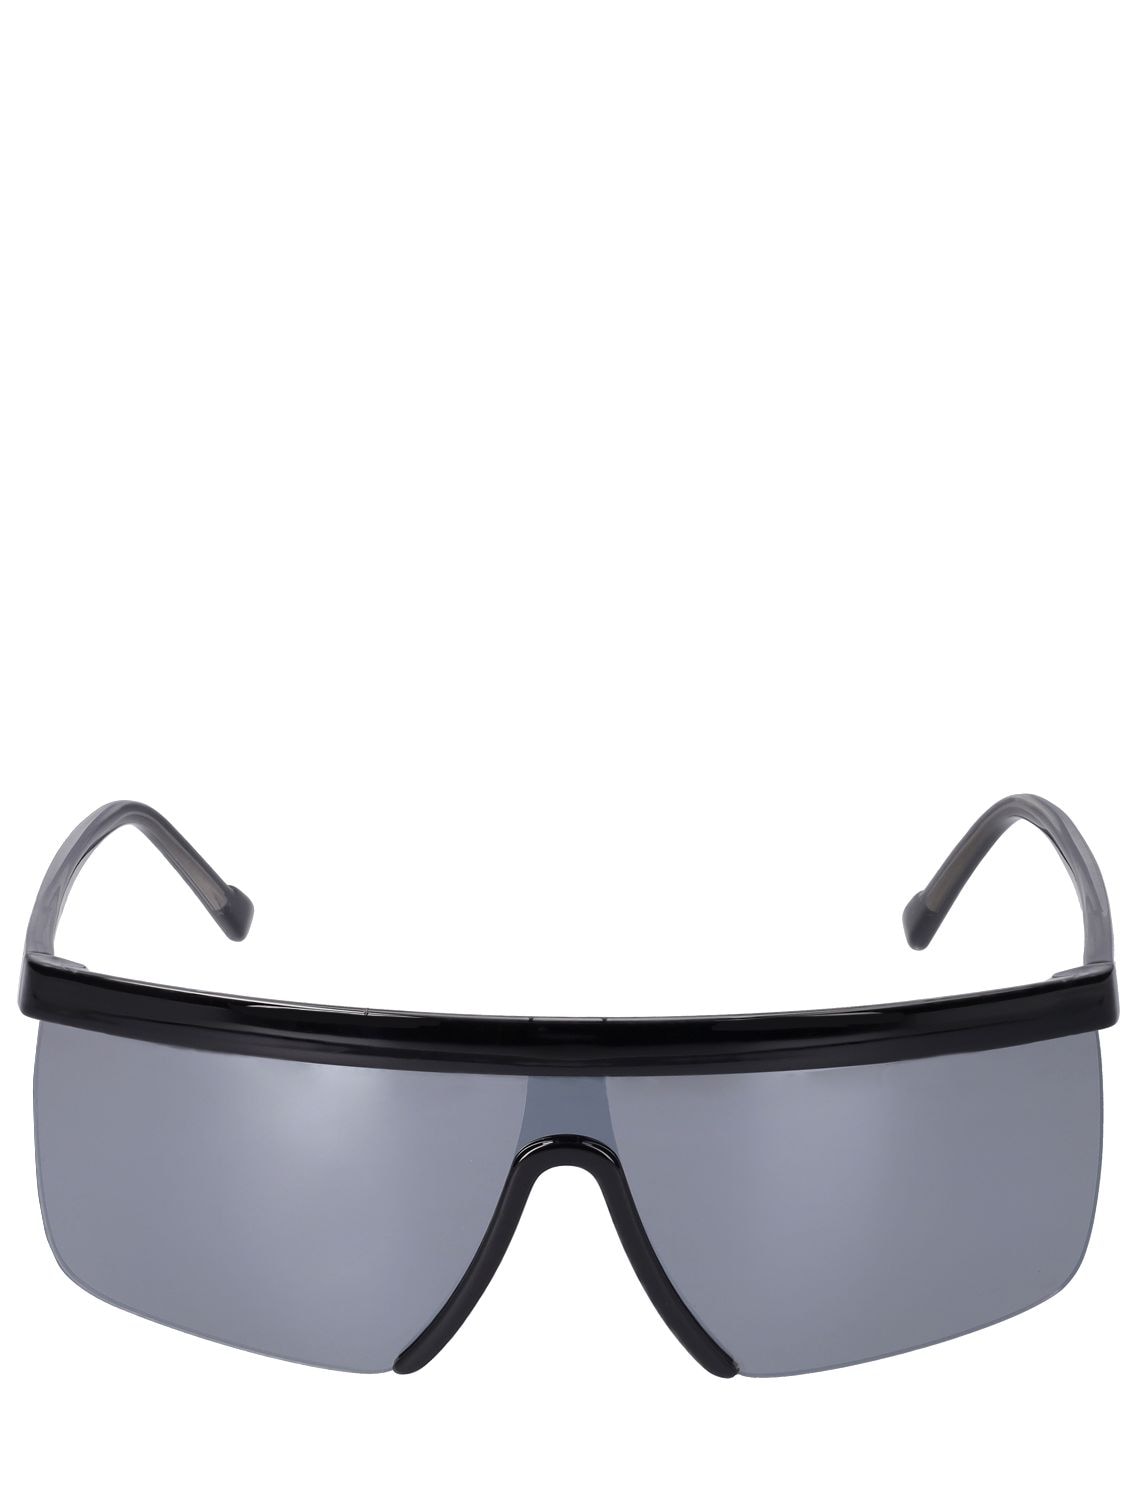 Giuseppe Di Morabito Mask Acetate Sunglasses W/ Mirror Lens In Black,mirror